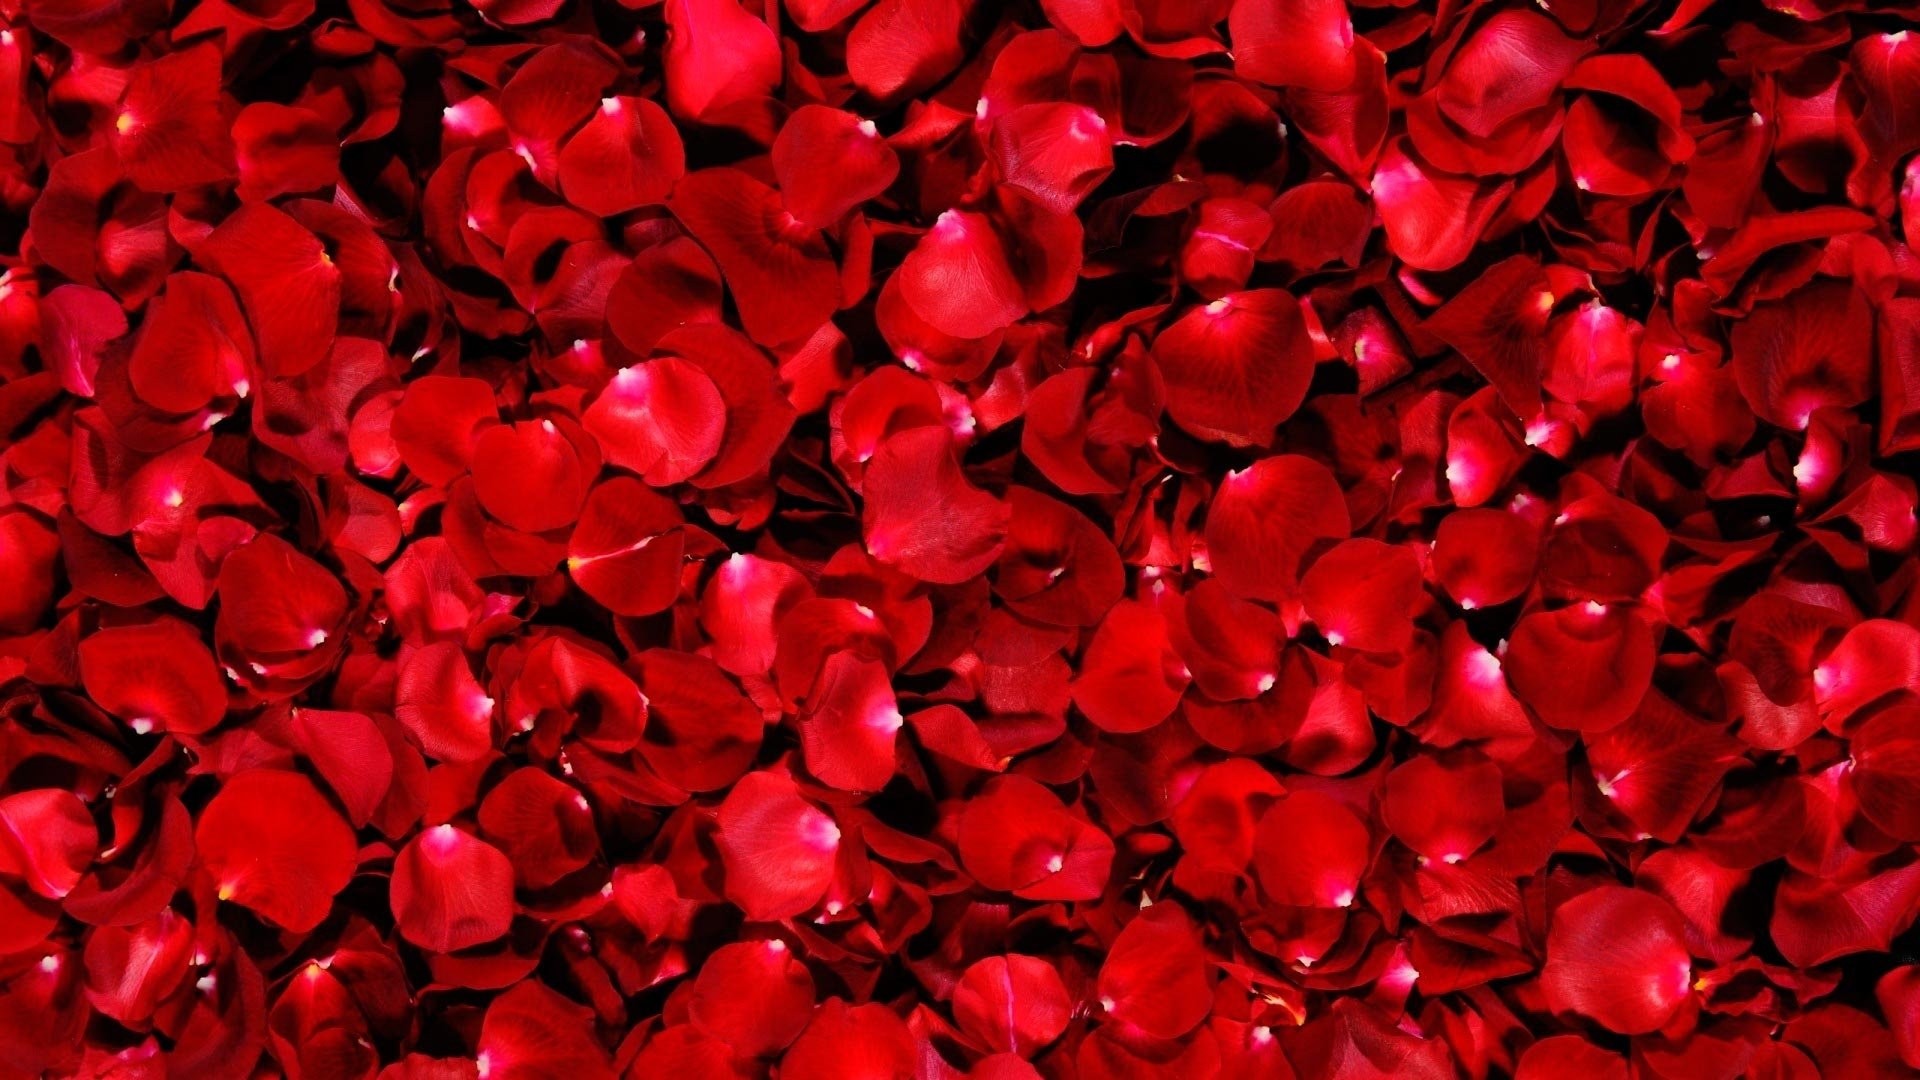 Red Rose hd desktop wallpaper